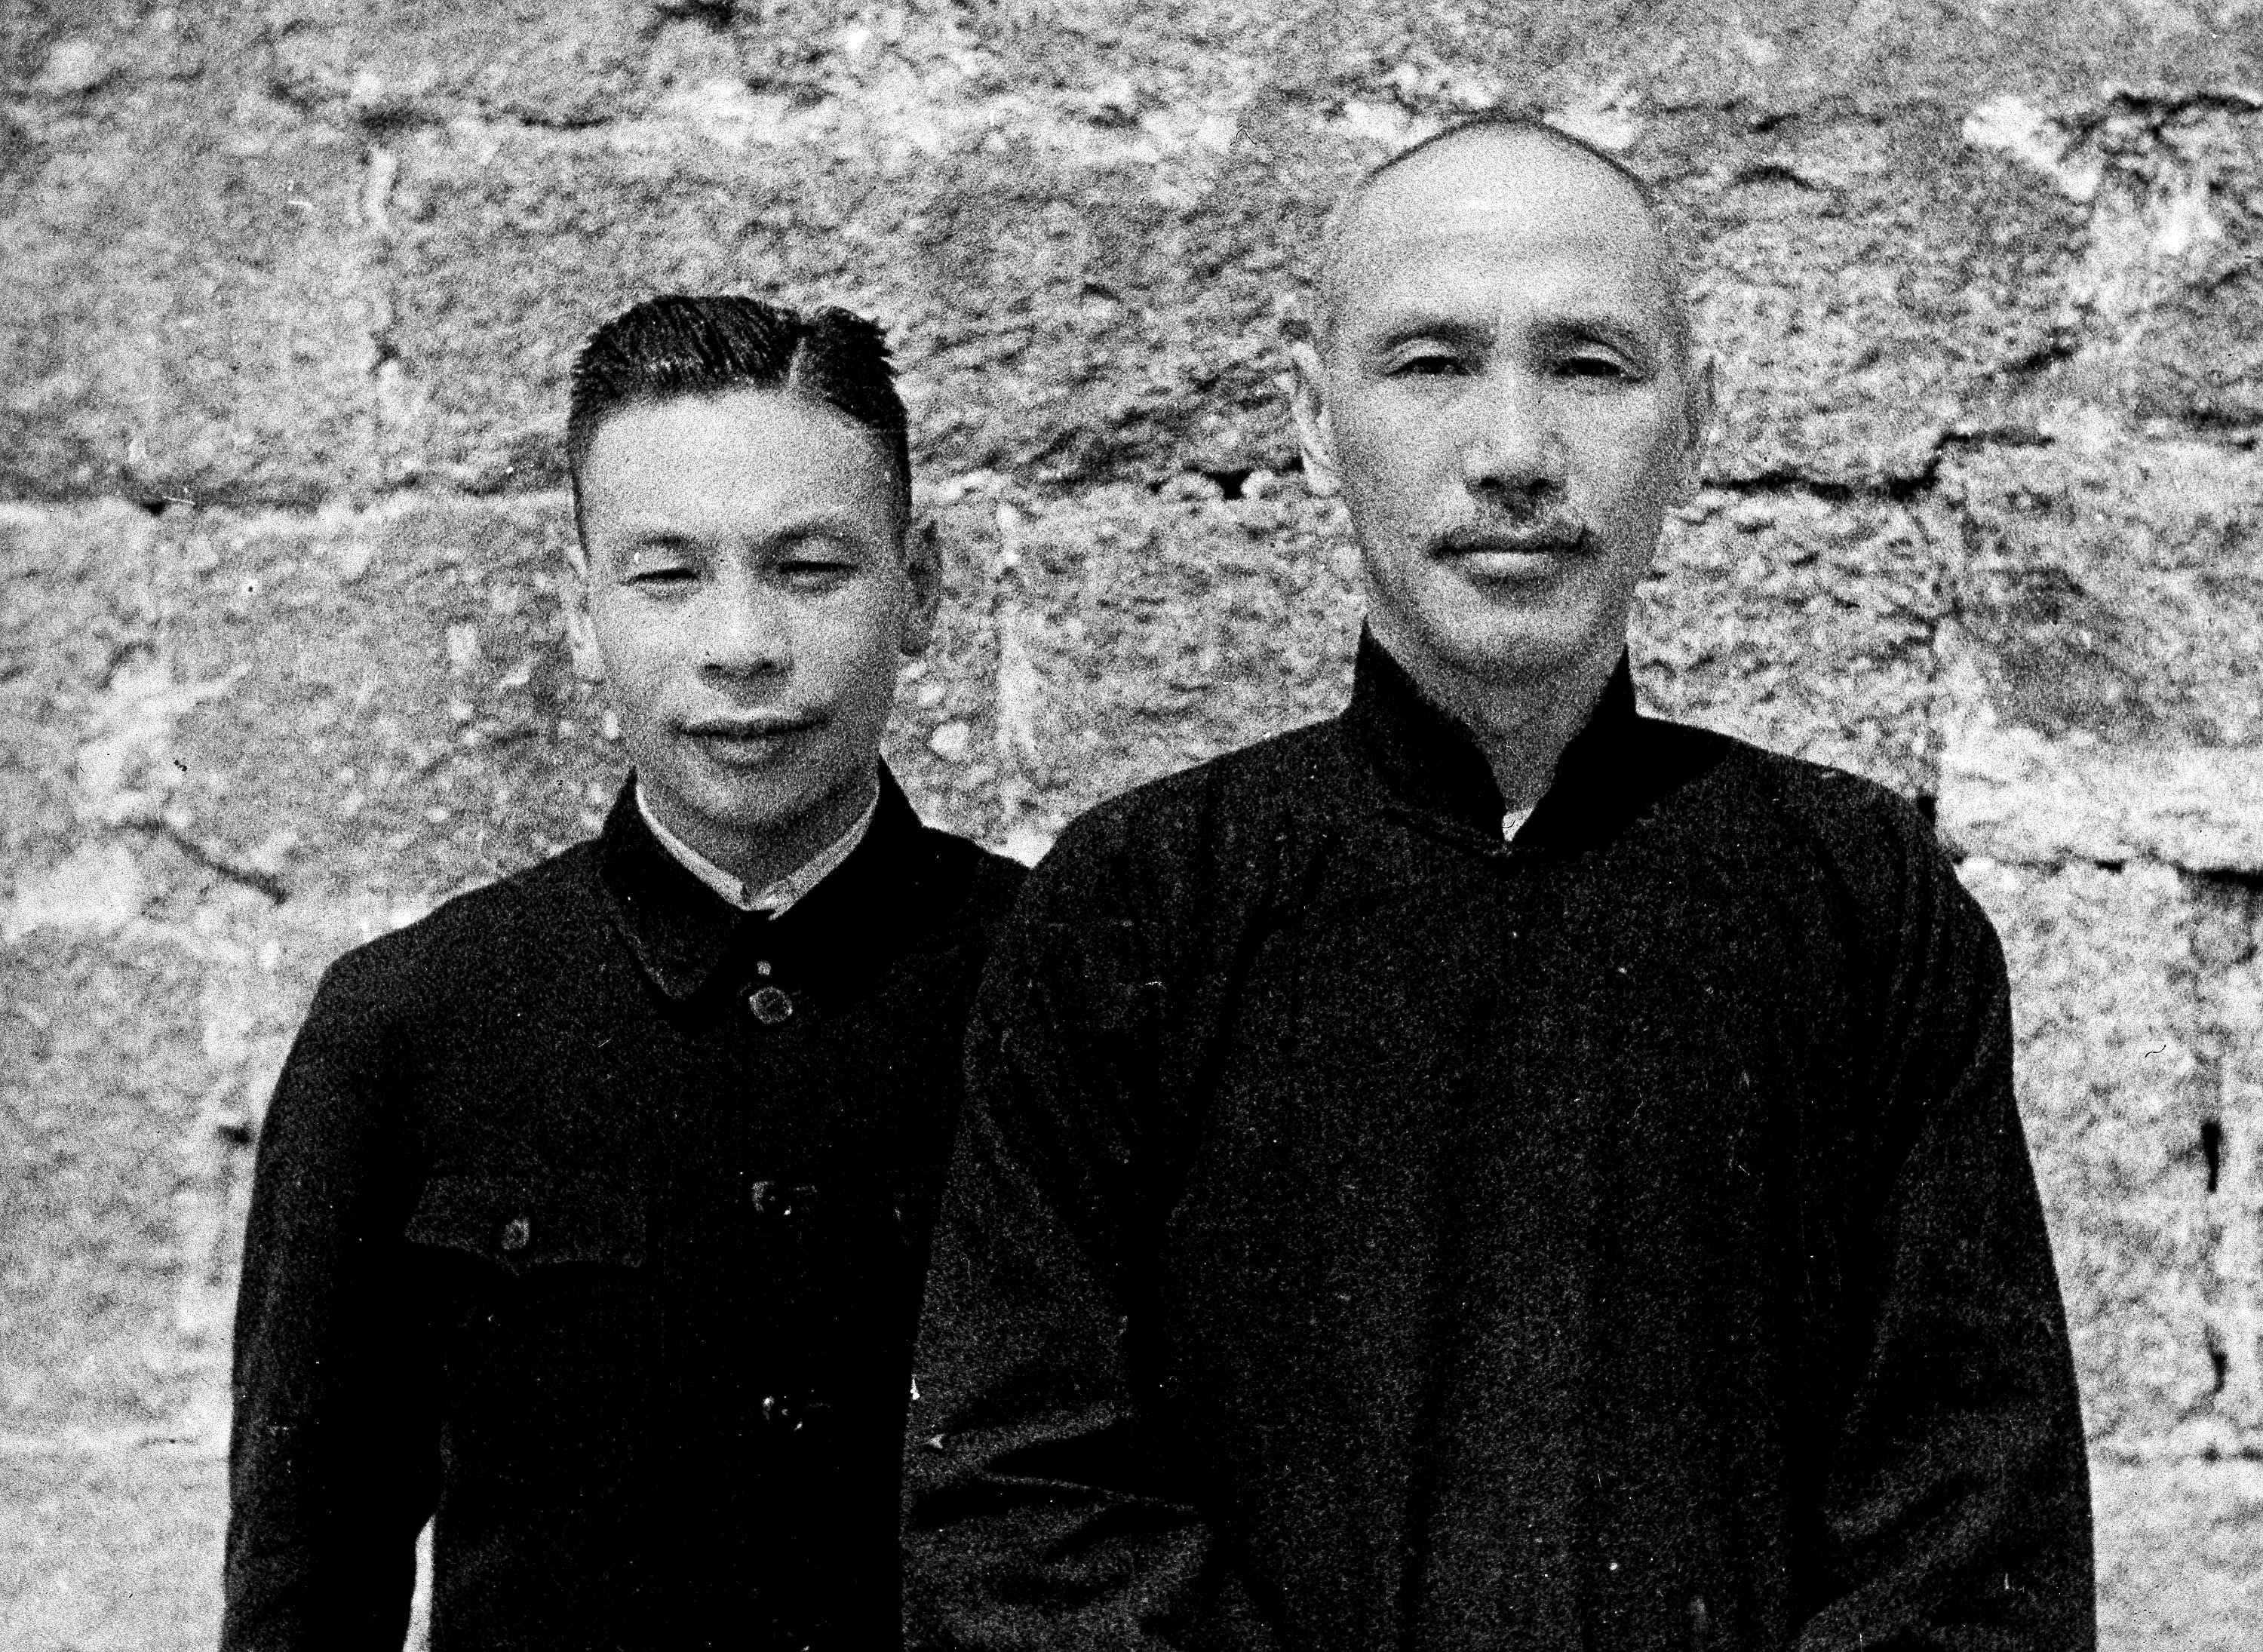 蔣介石 蔣經國 Chiang Kai-Shek Chiang Ching-Kuo